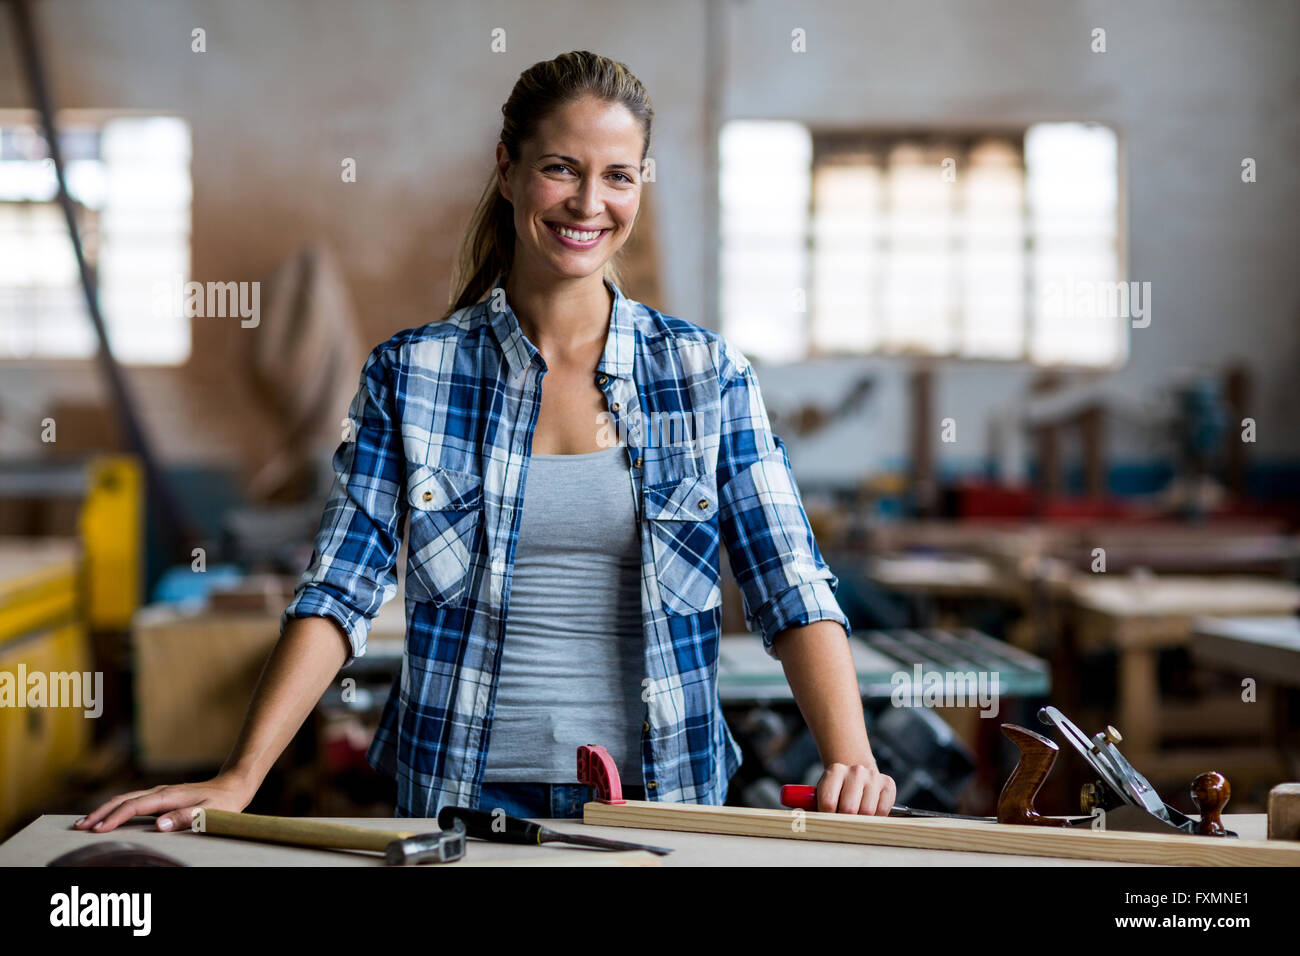 Portrait of female carpenter debout avec l'outil de travail Banque D'Images